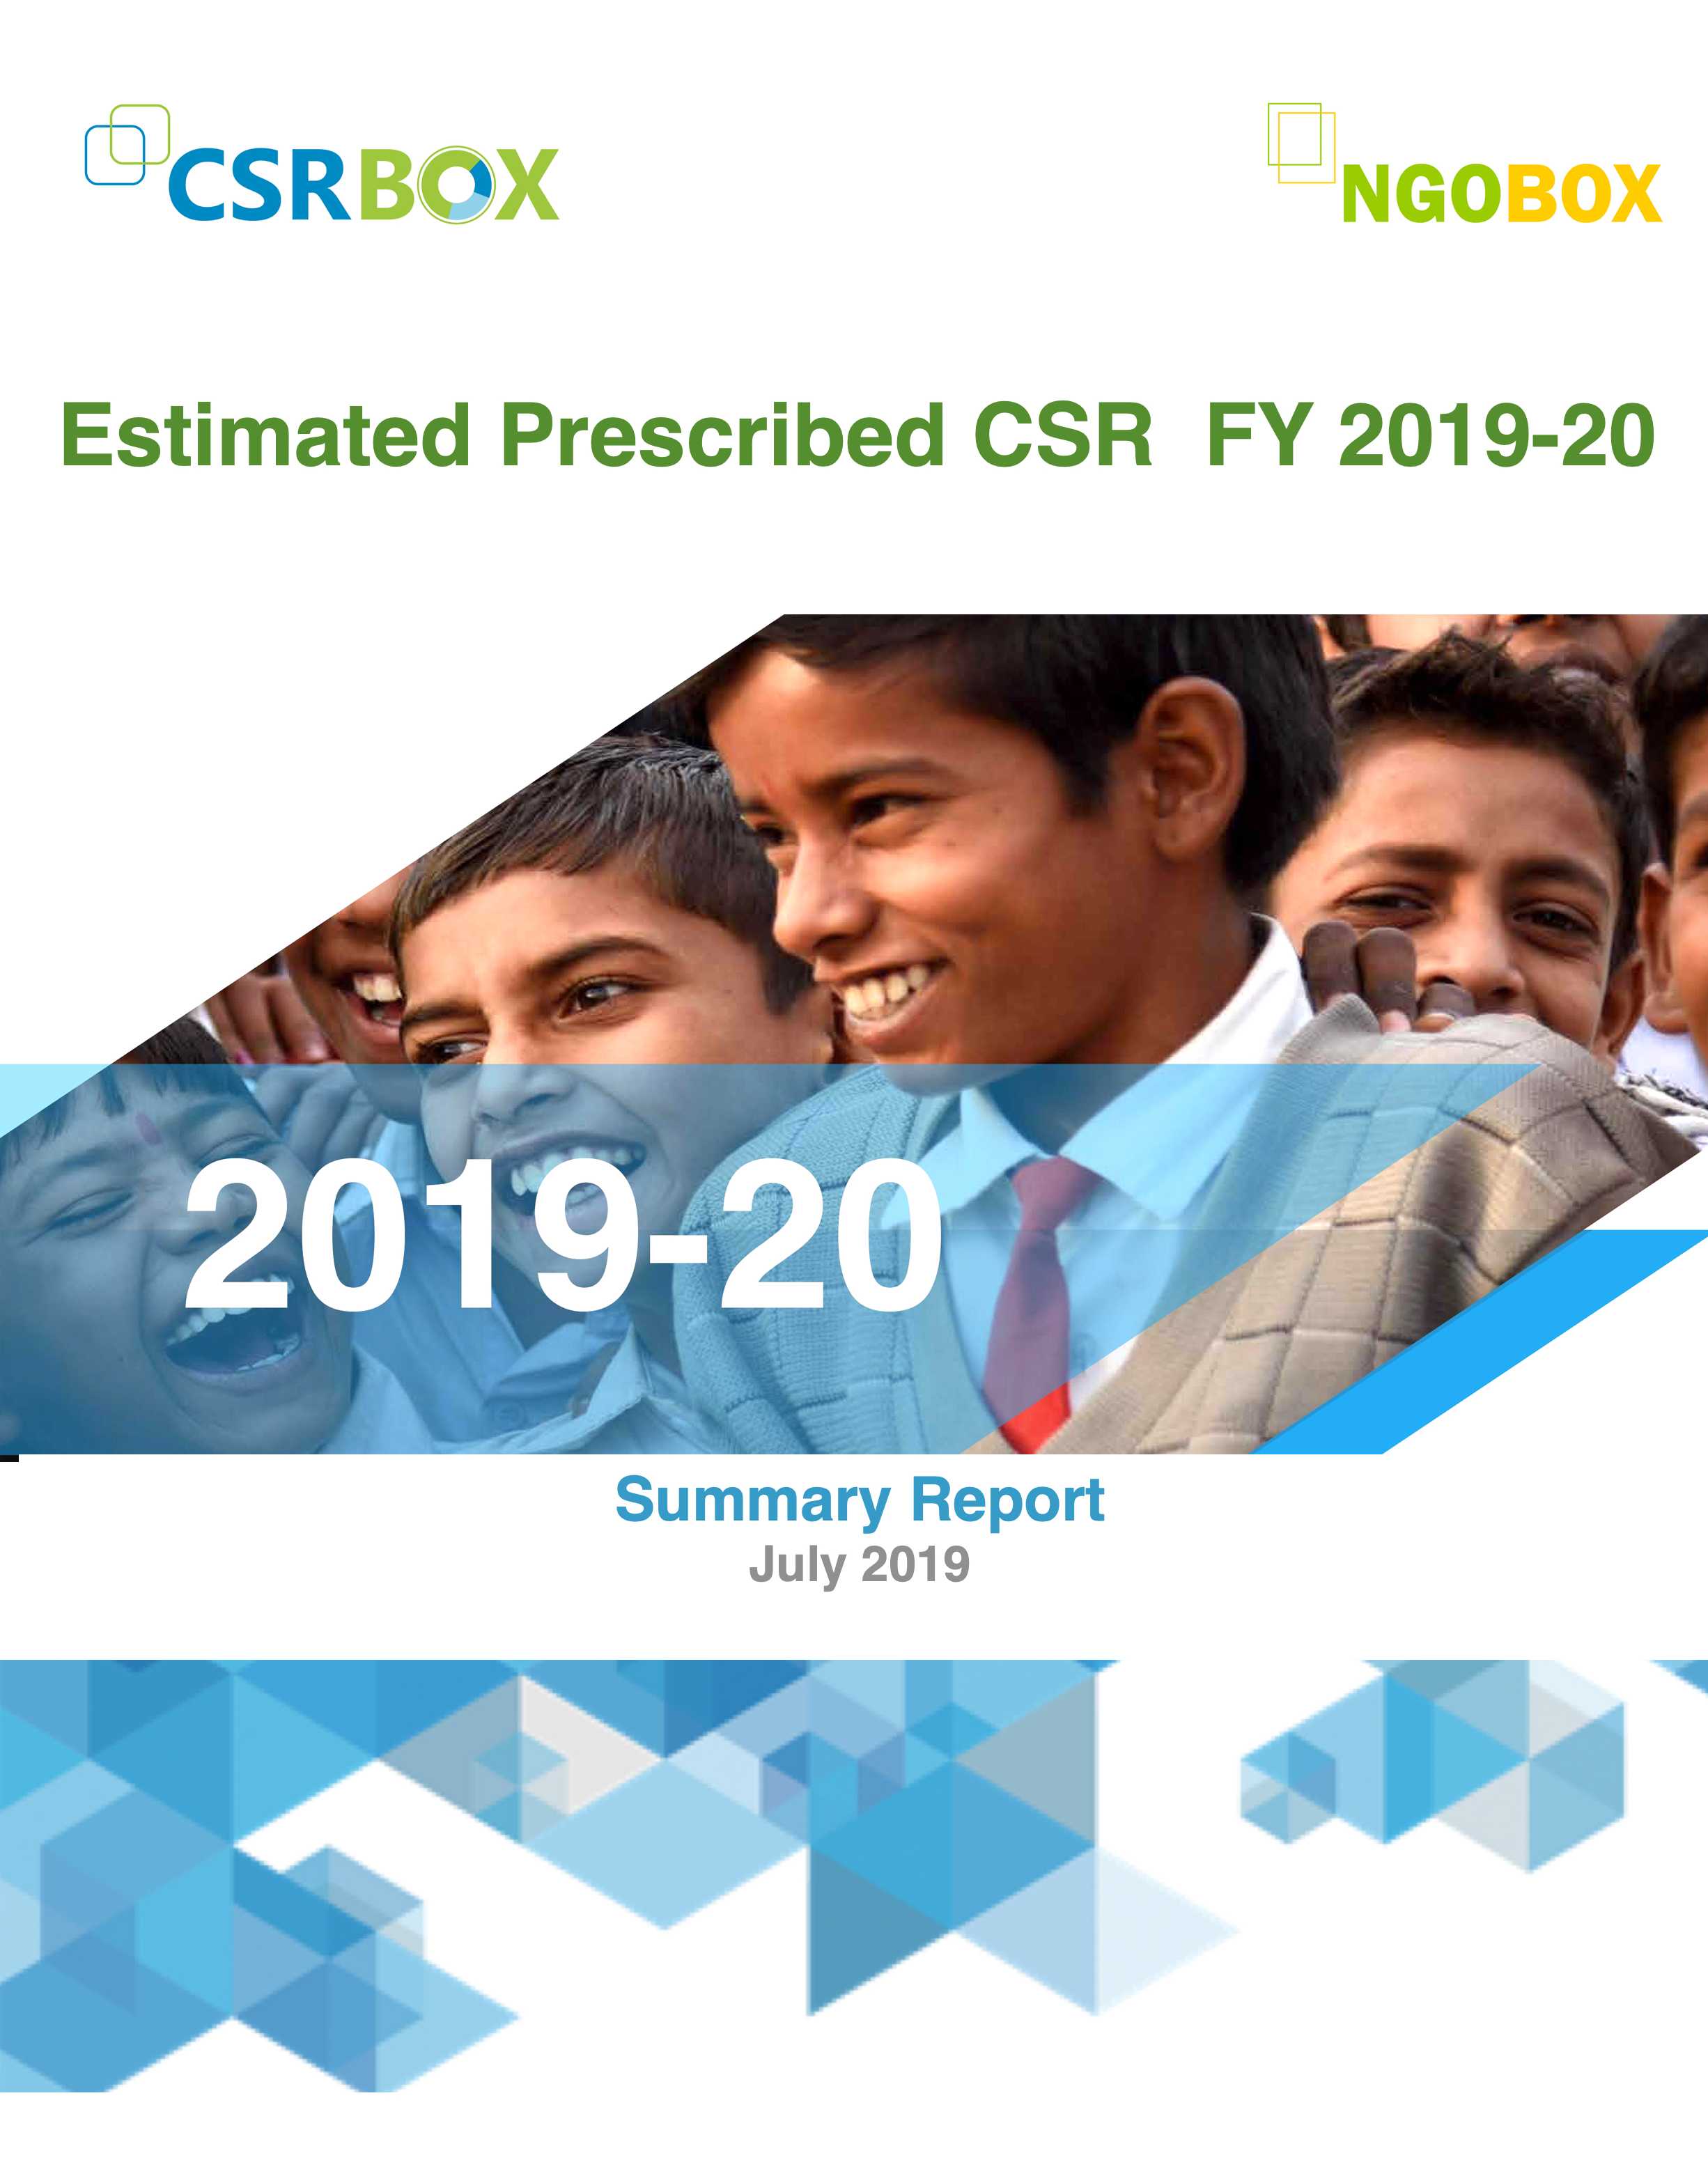 Estimated Prescribeid CSR of big 500 companies FY 2019-20